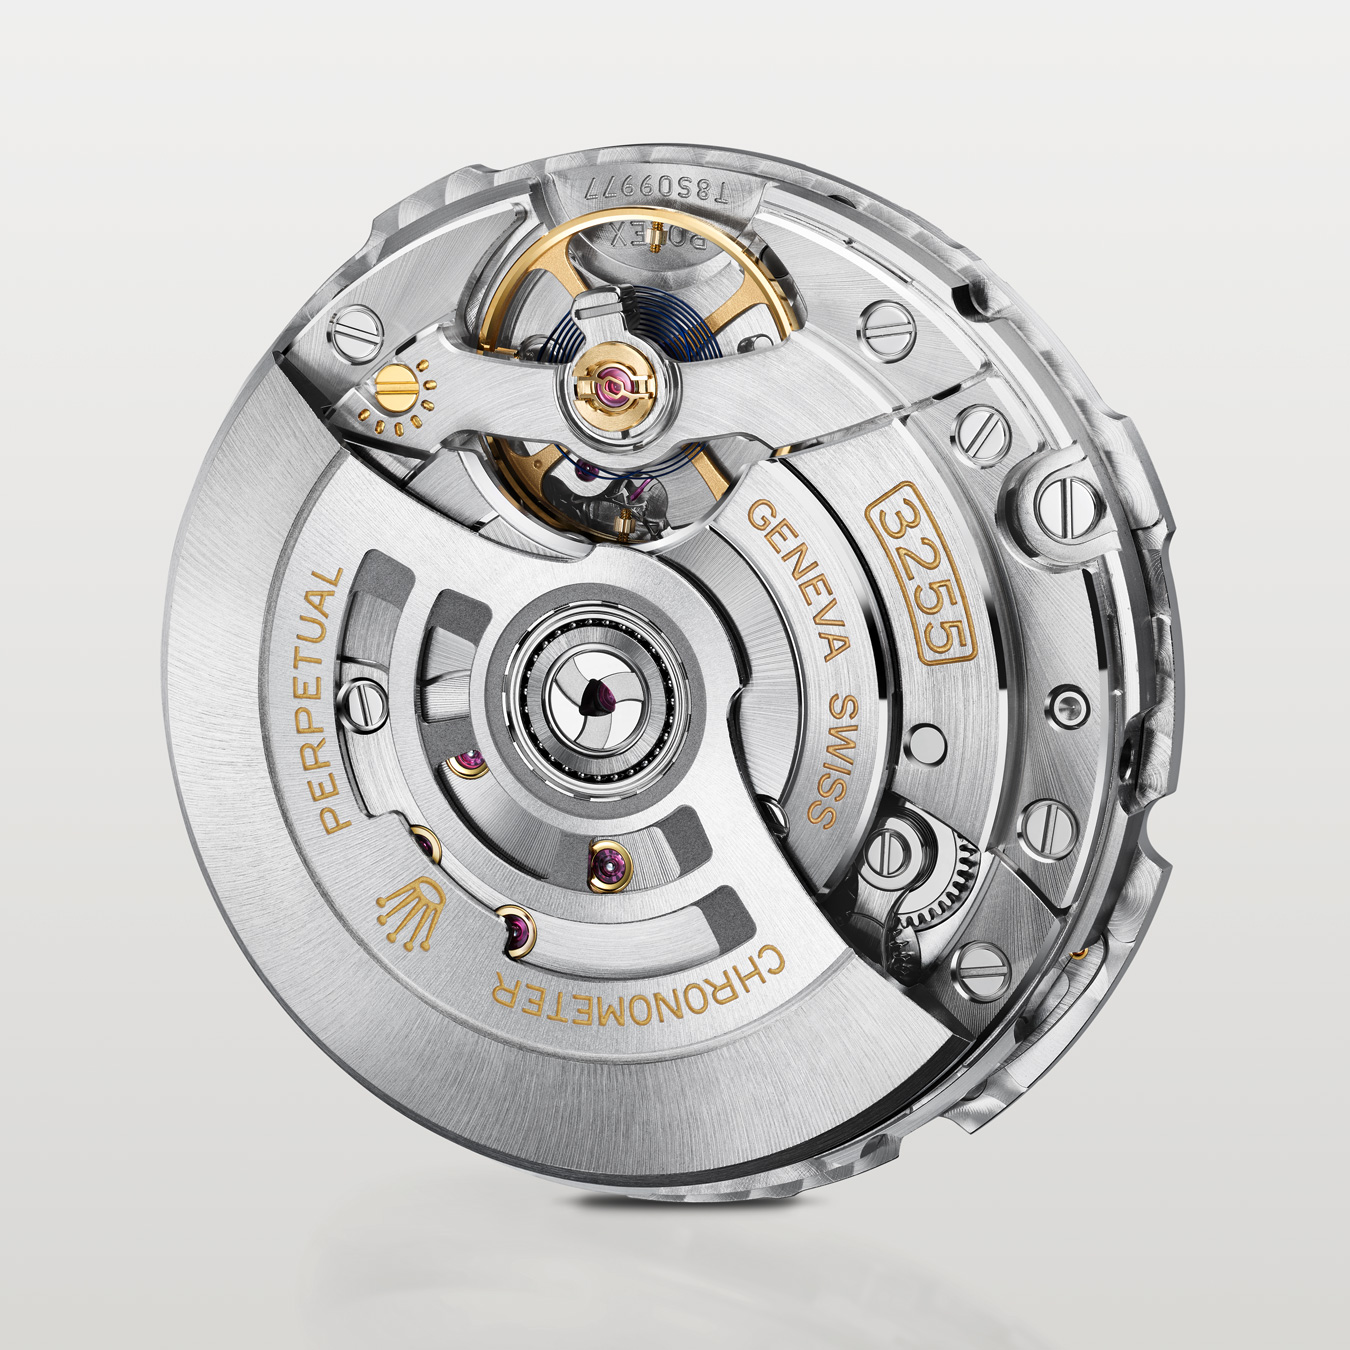 Inside workings of silver Rolex watch